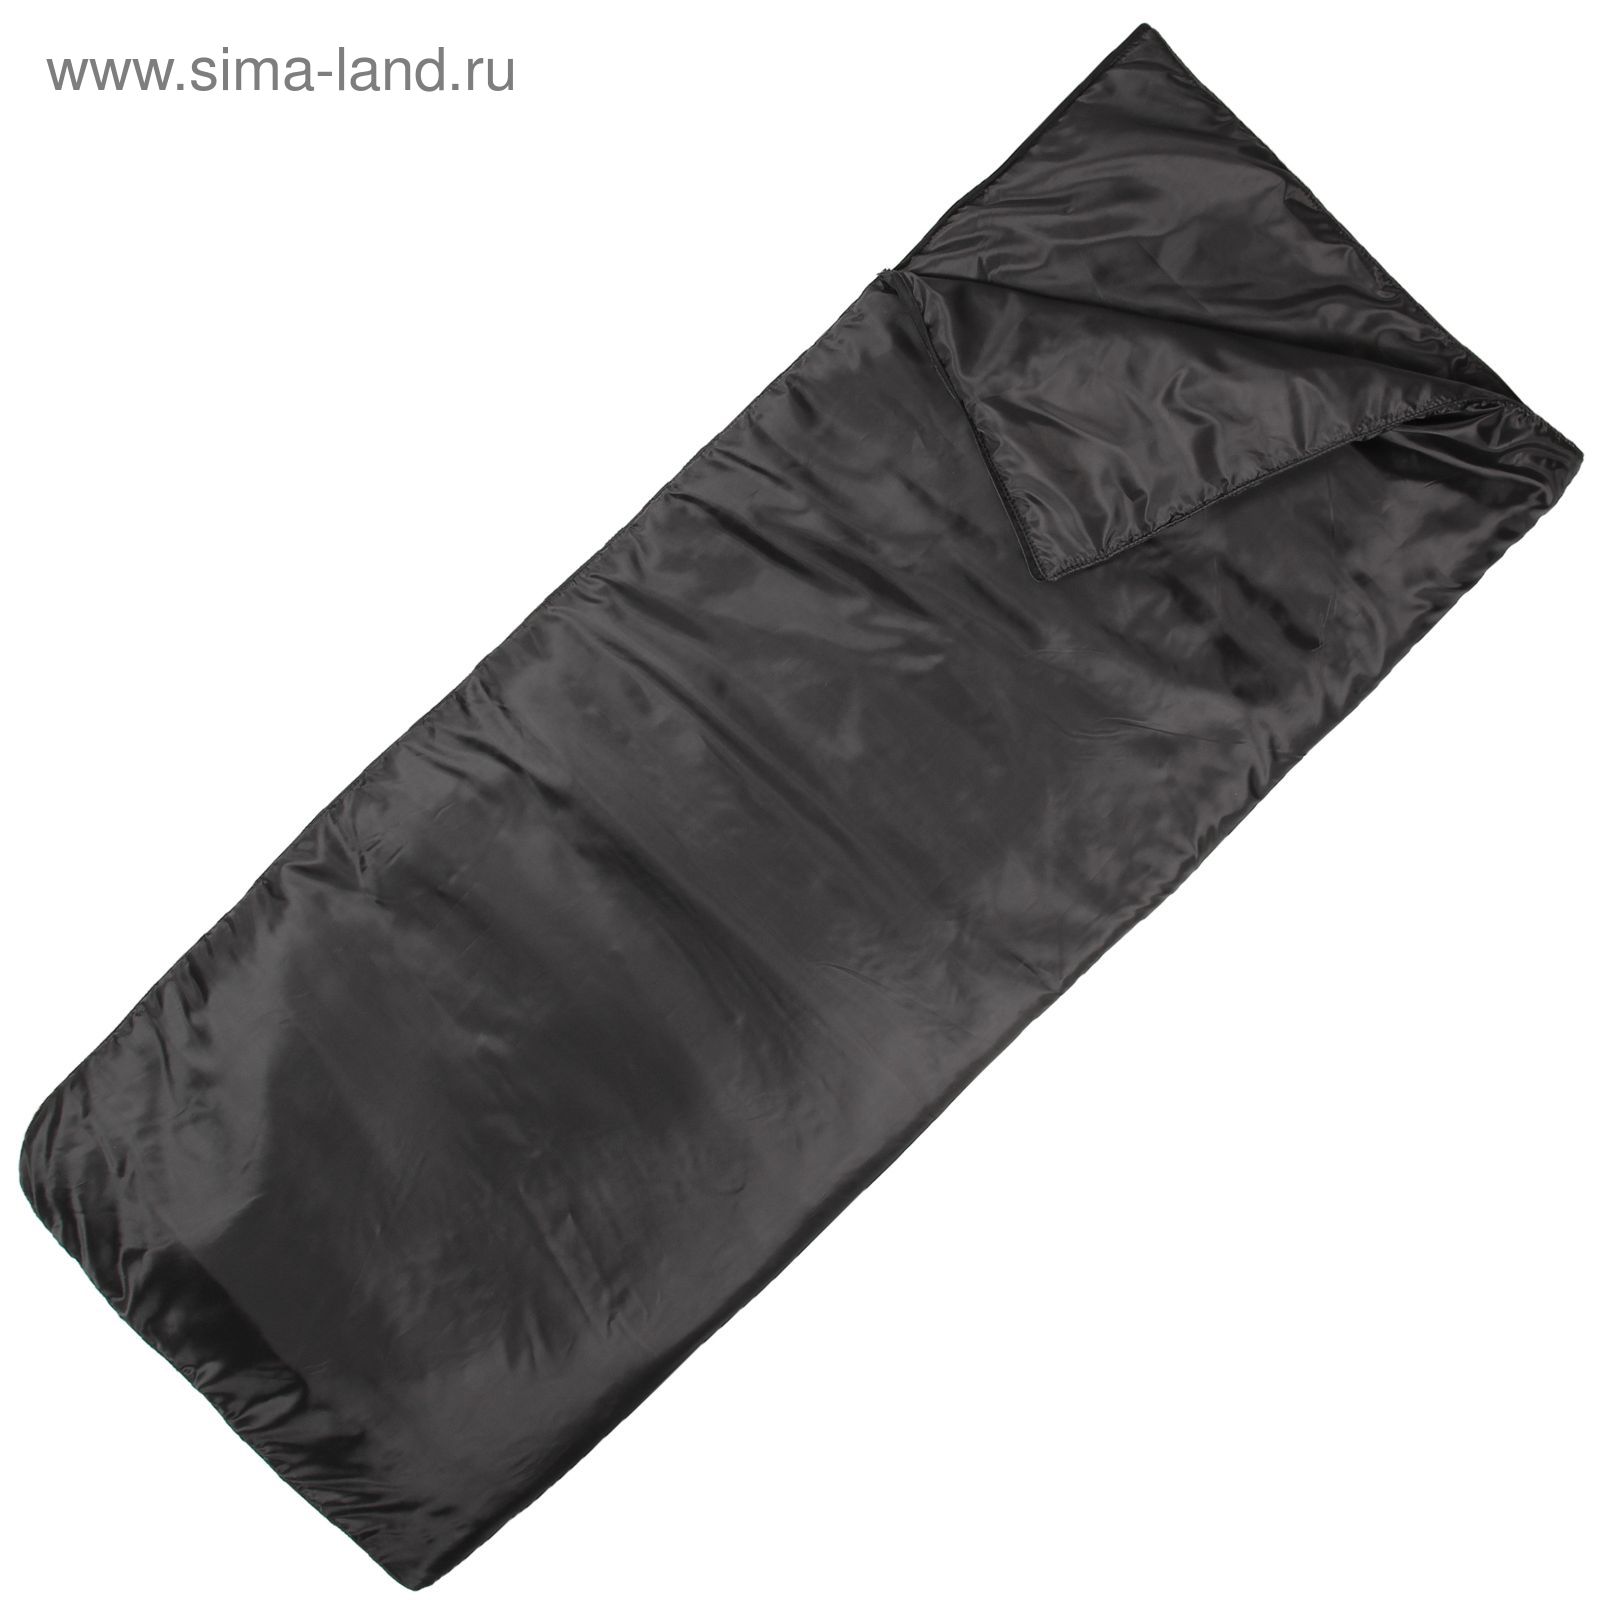 Спальный мешок-одеяло, синтепон 200, 185х70 см, цвет микс